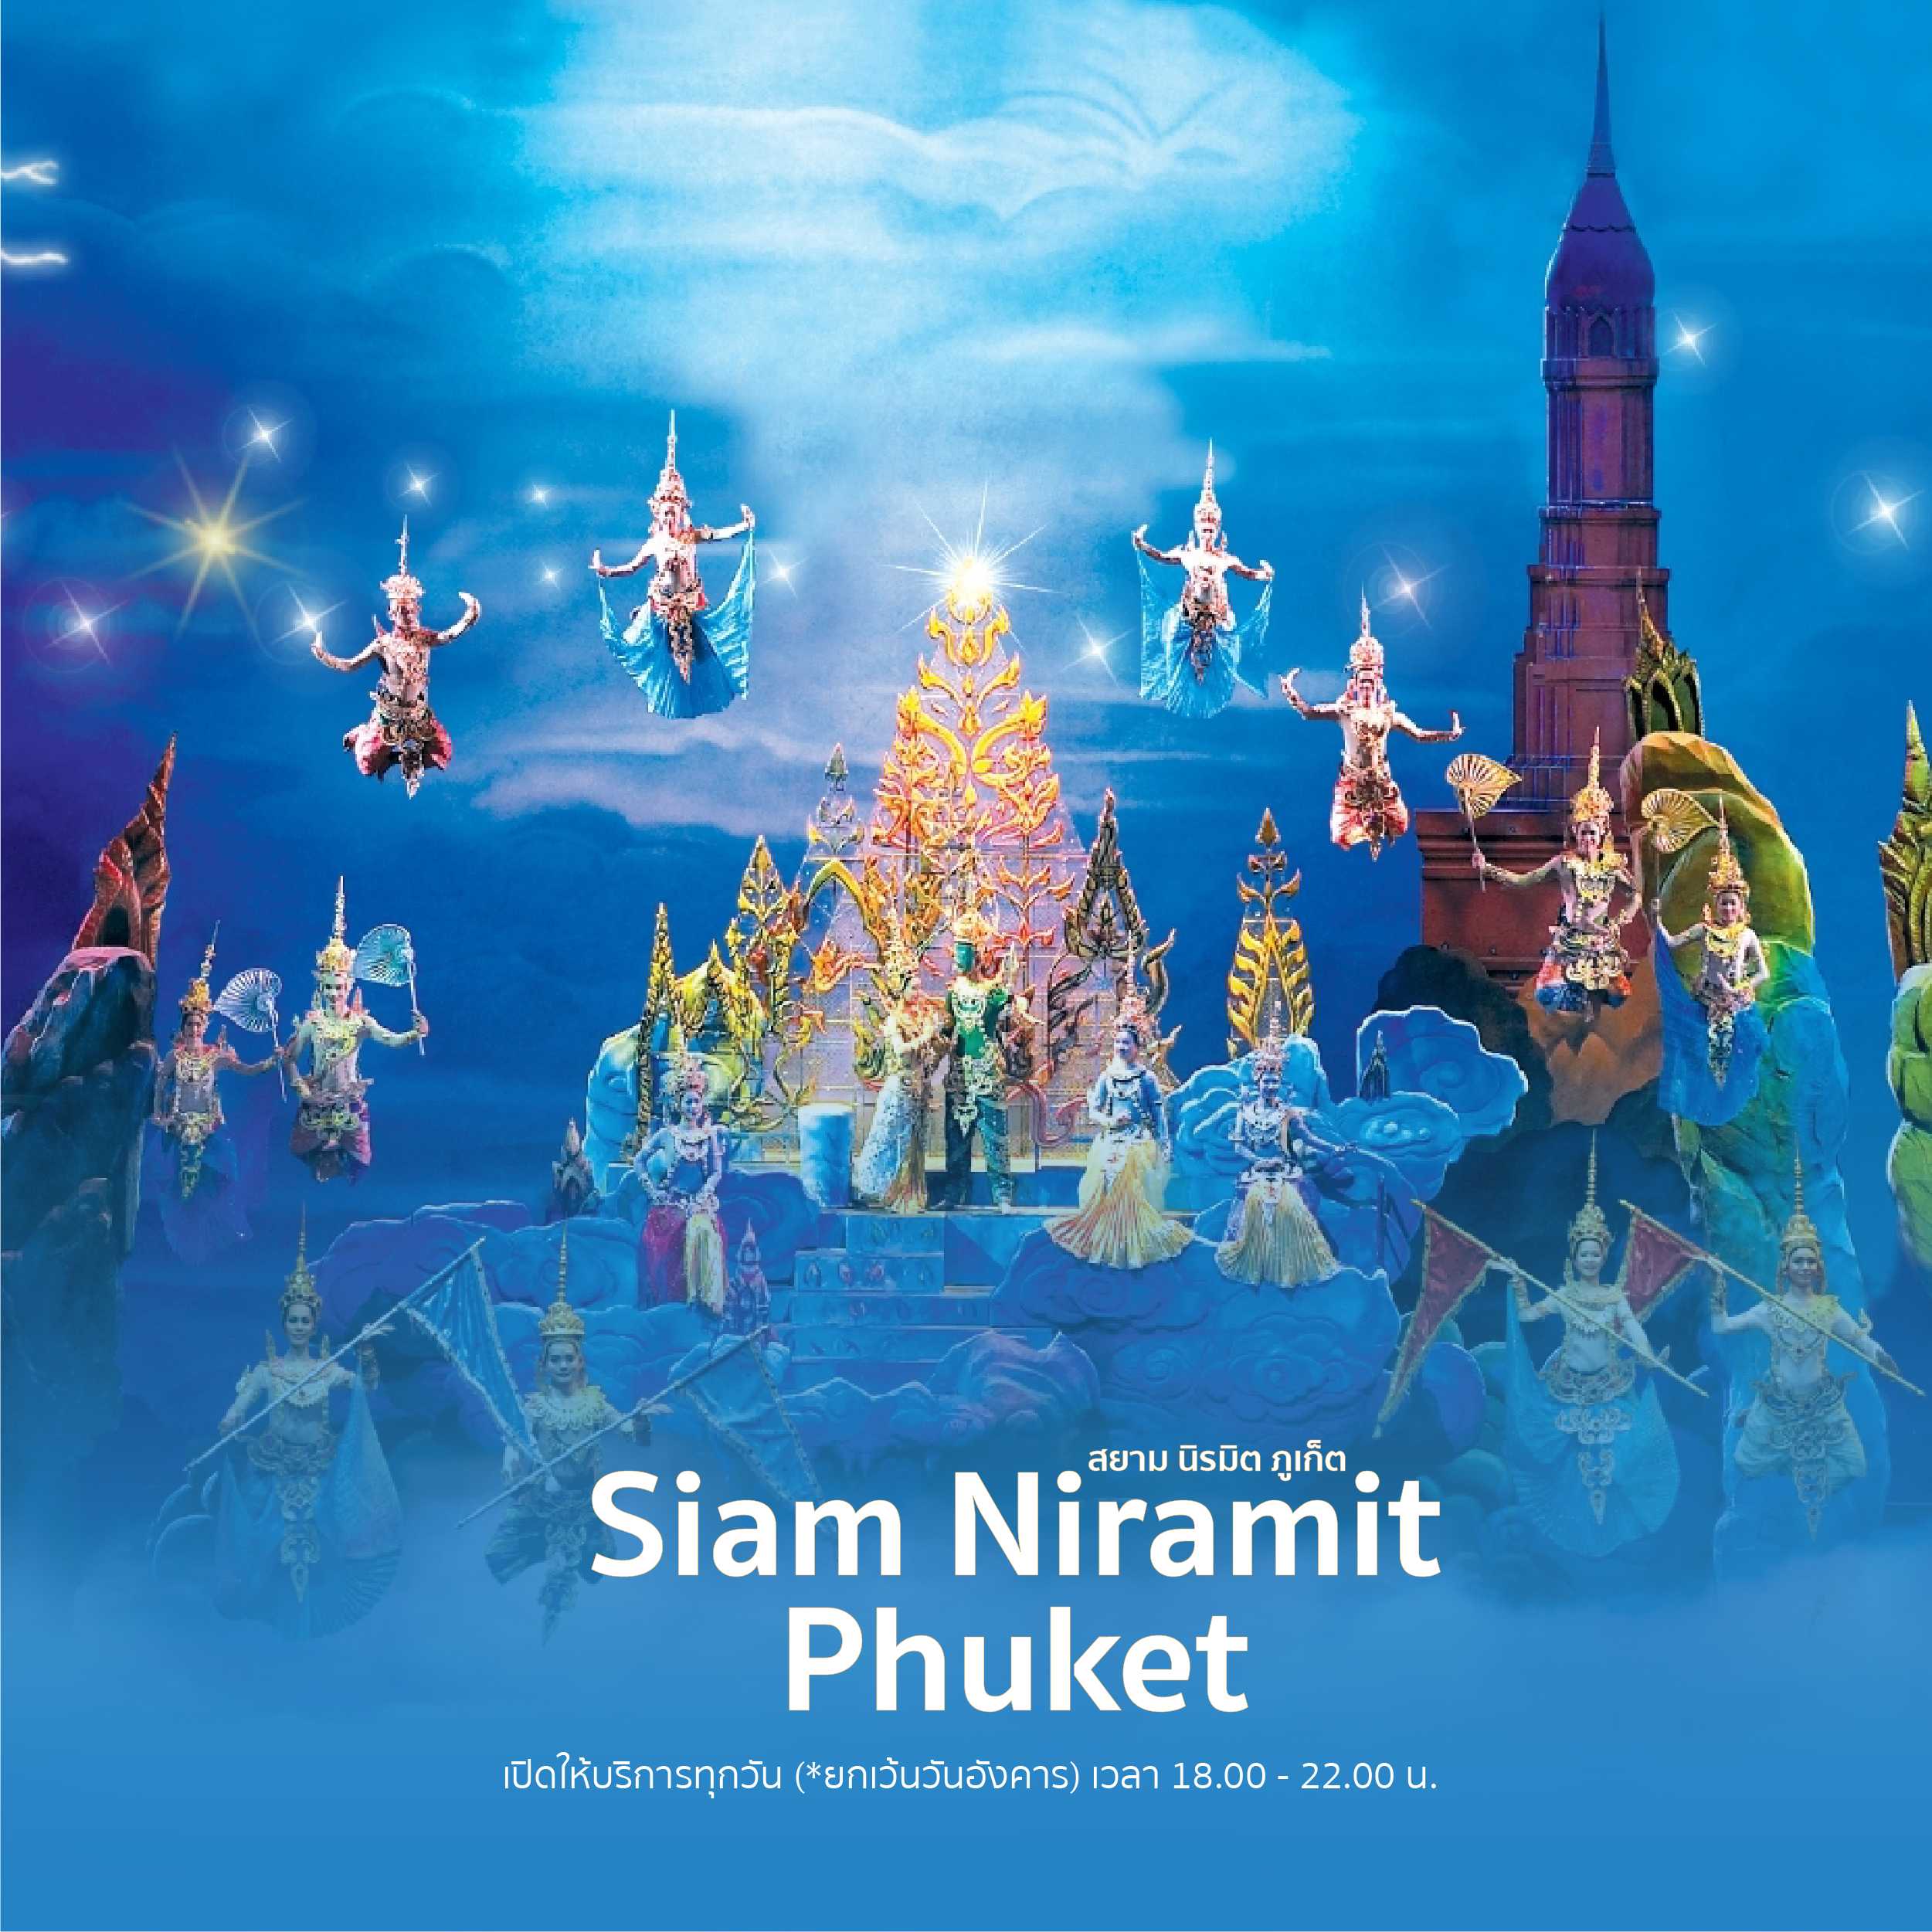 [ E-Voucher ] Siam Niramit Phuket